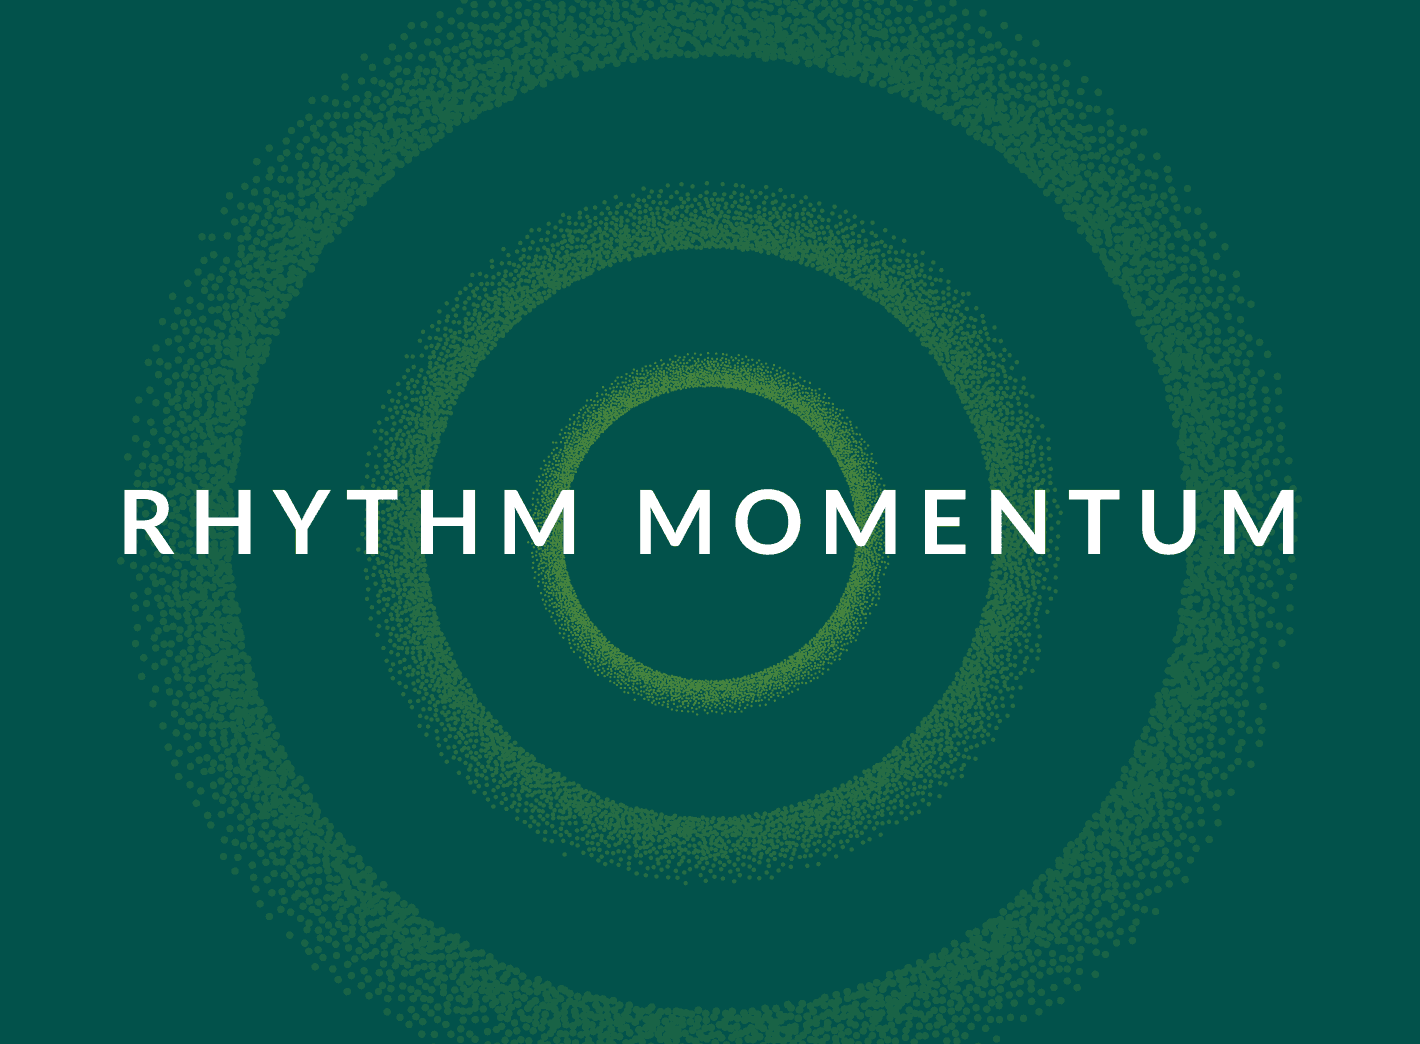 "Rhythm Momentum"